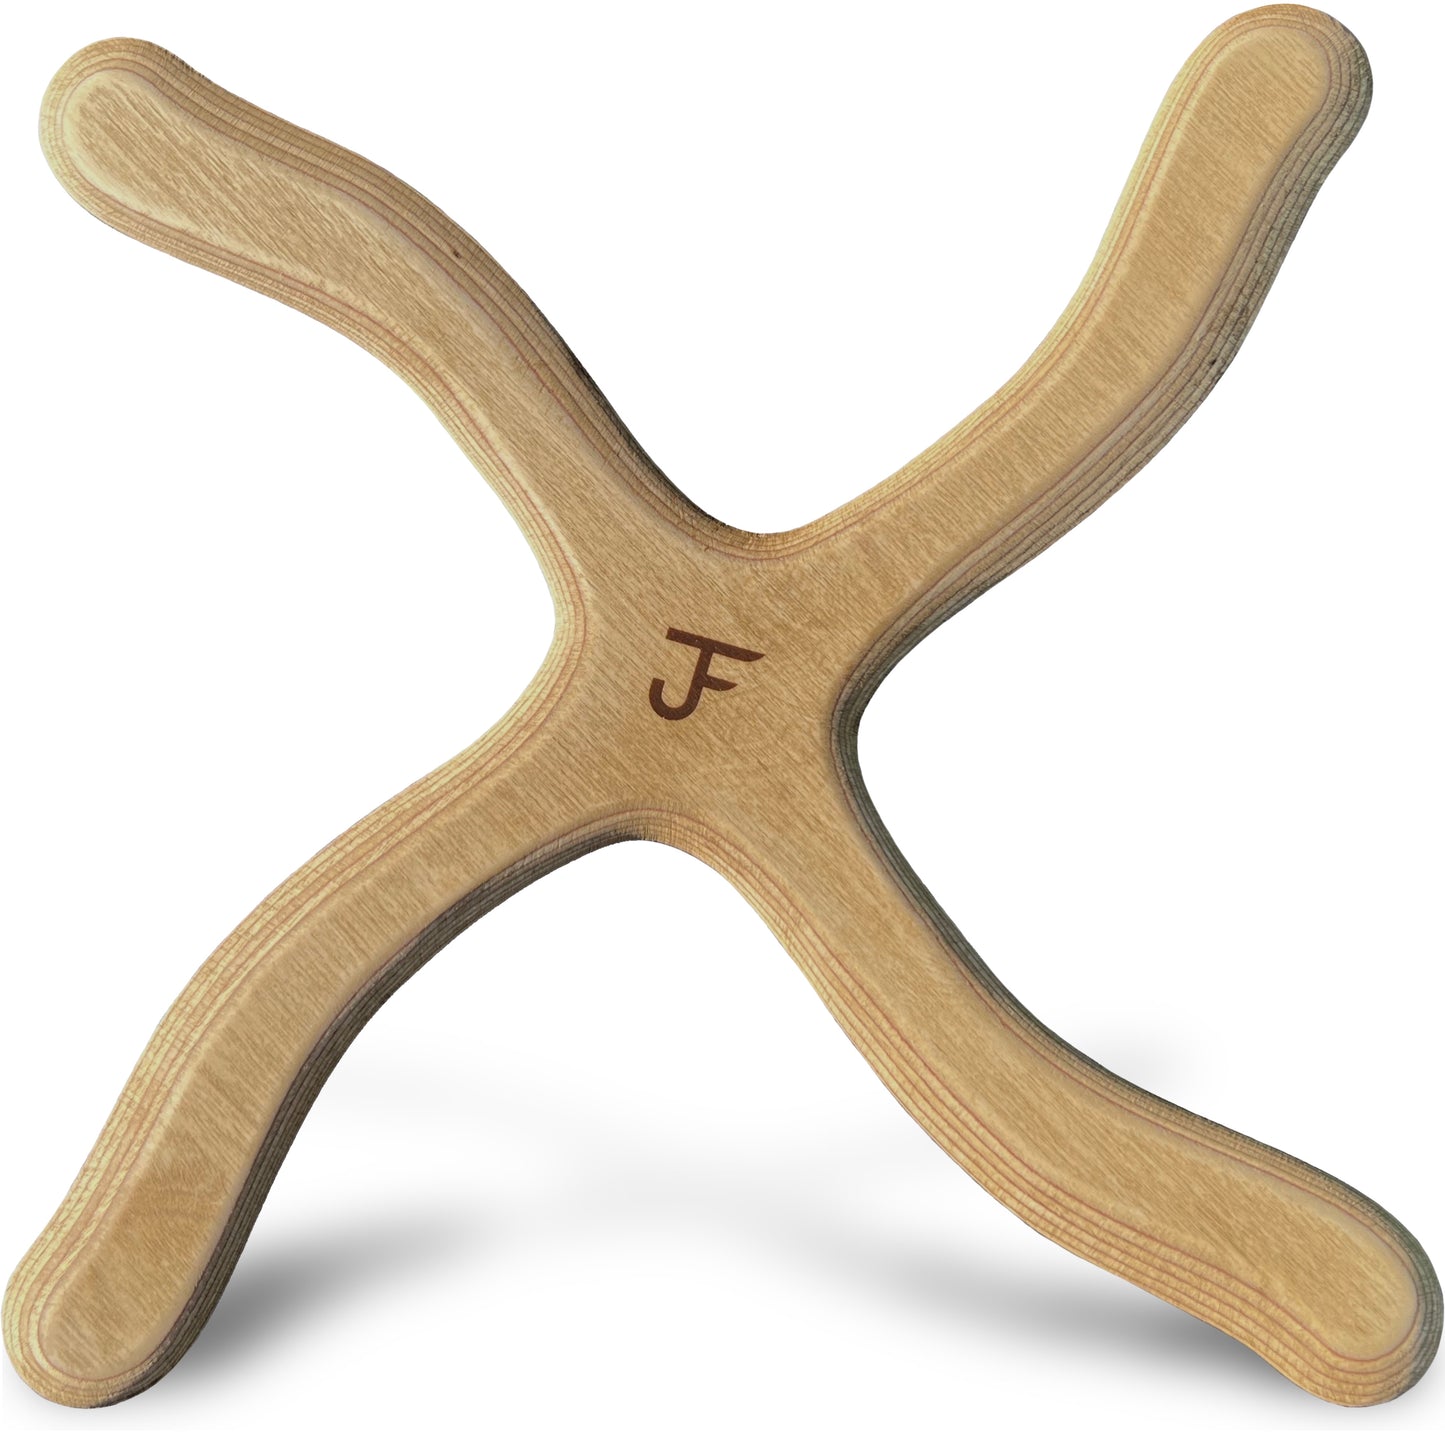 JF Bumerang - Modell New York - dunkel